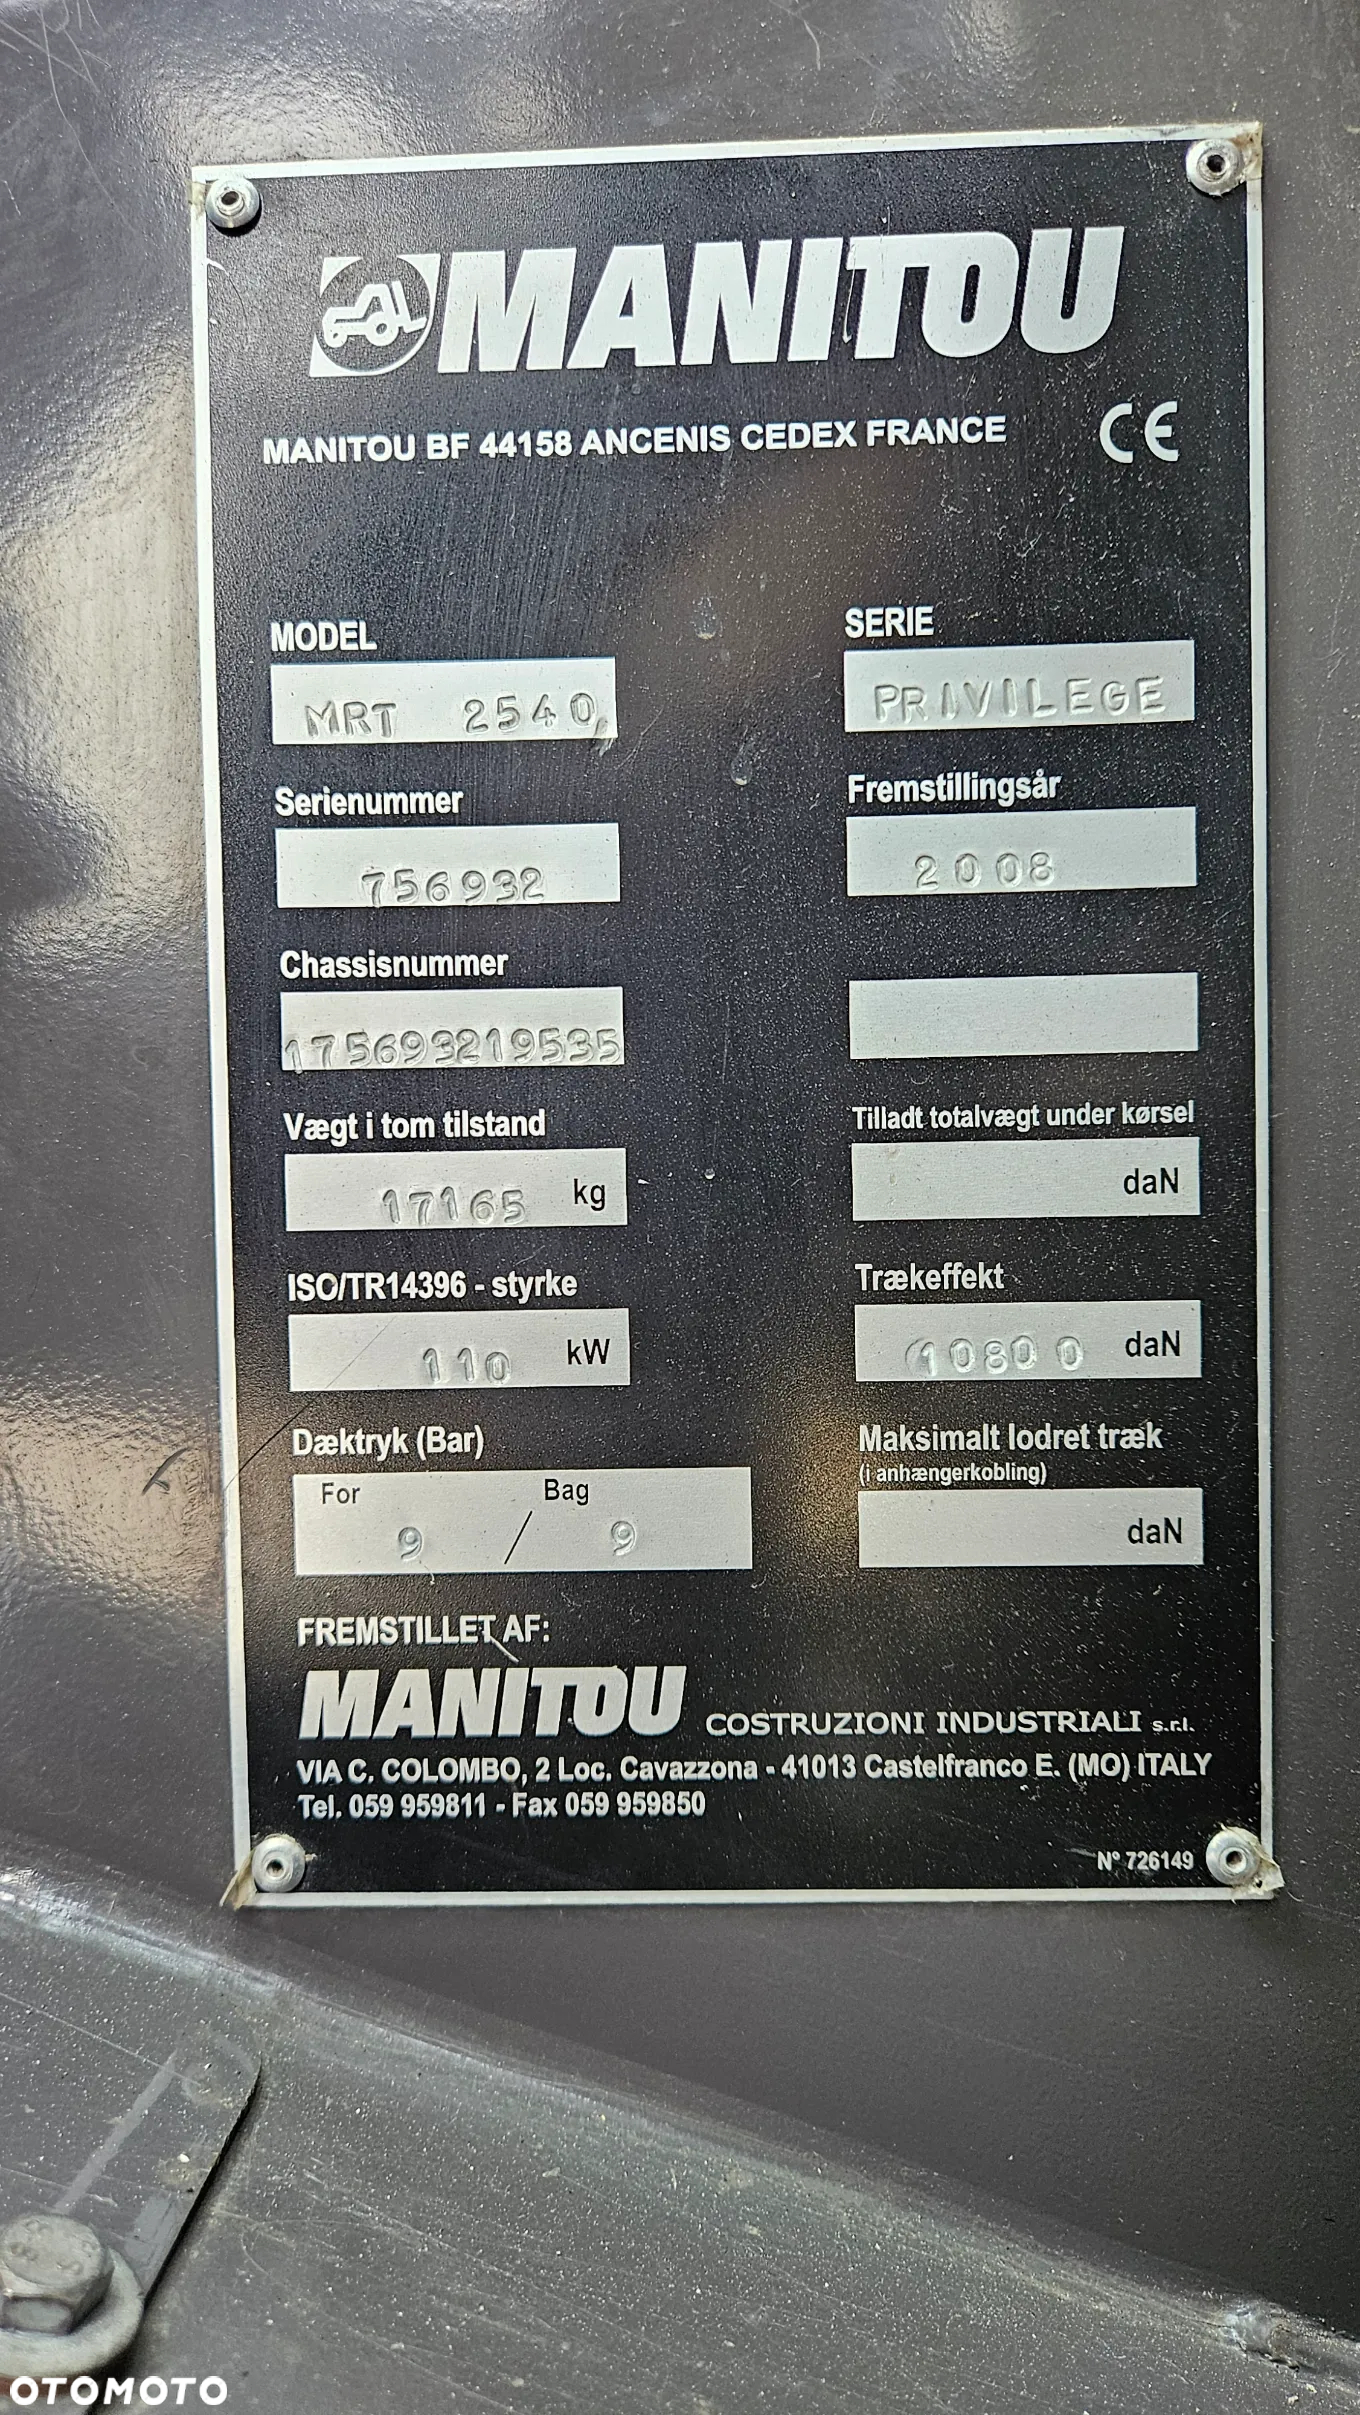 Manitou MRT 2540 PRIVILEGE - 14